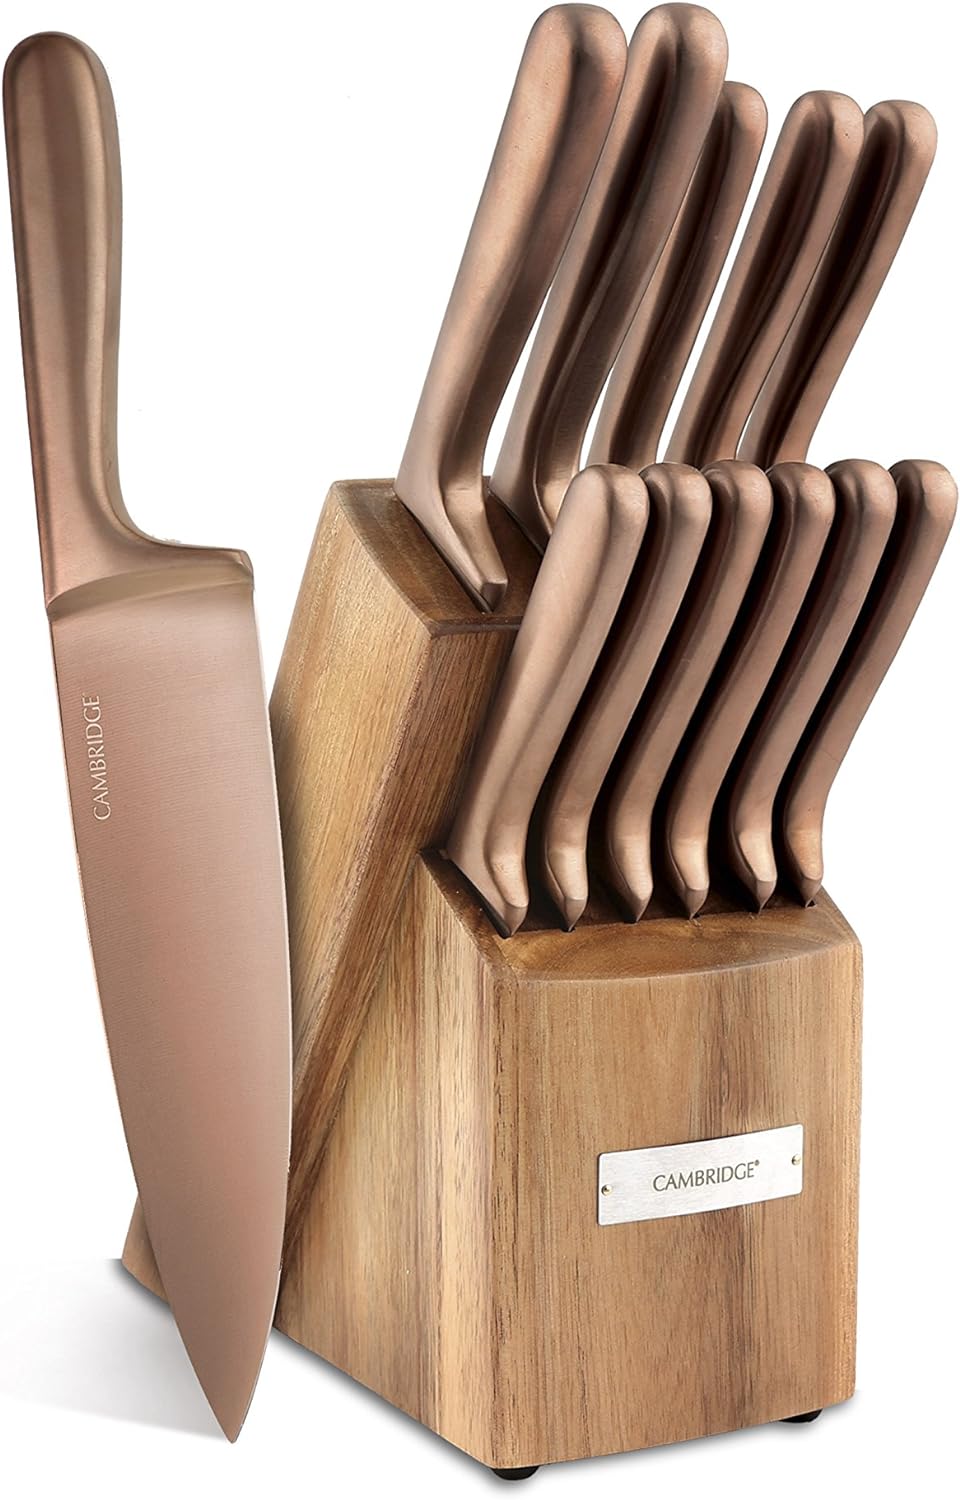 Cambridge Rame 12pcs Premium Titanium Cutlery set